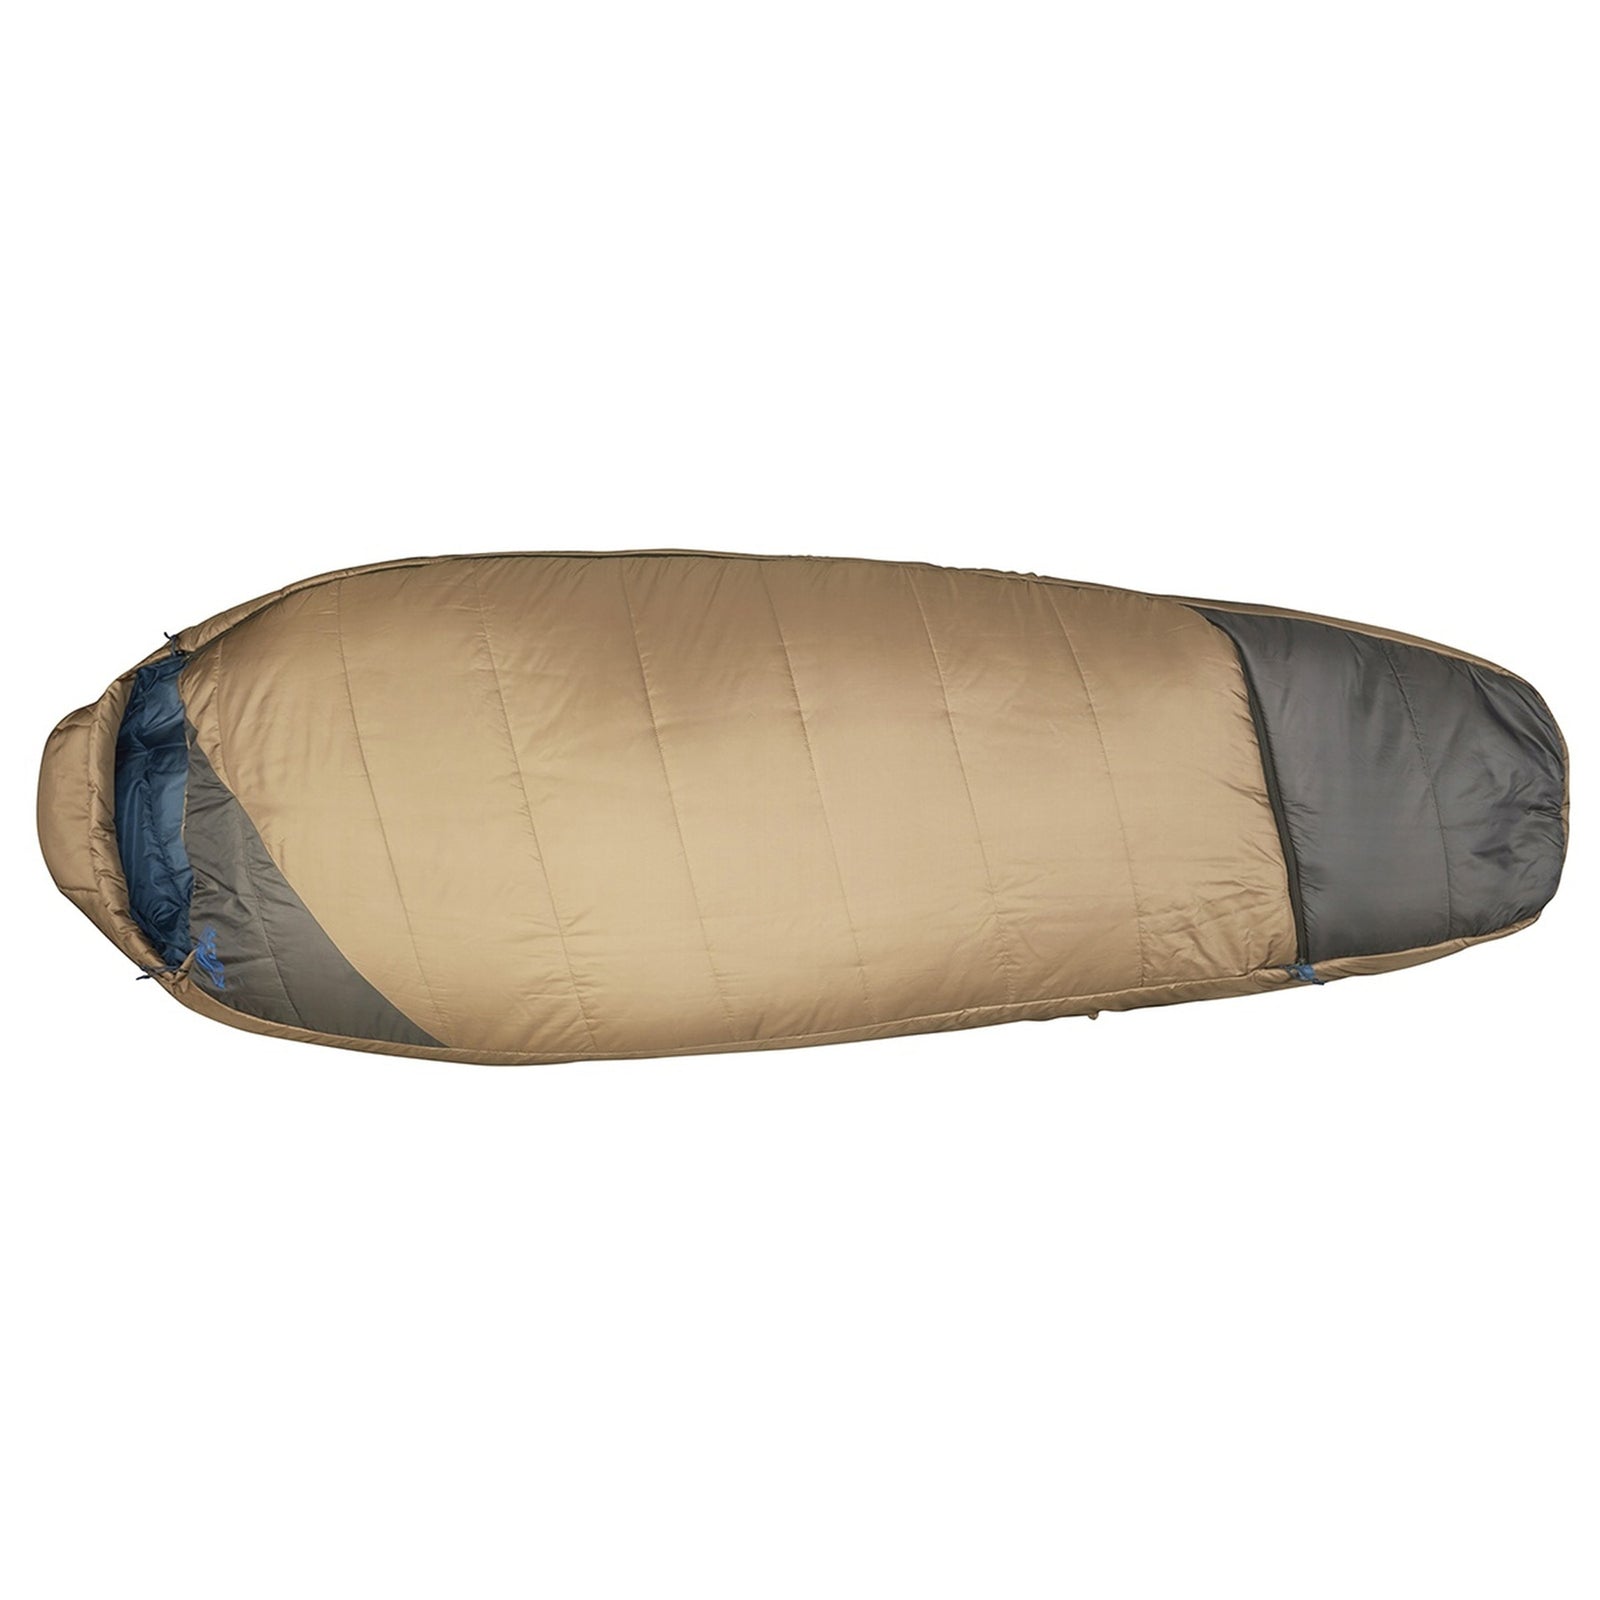 the kelty tuck 20 sleeping bag